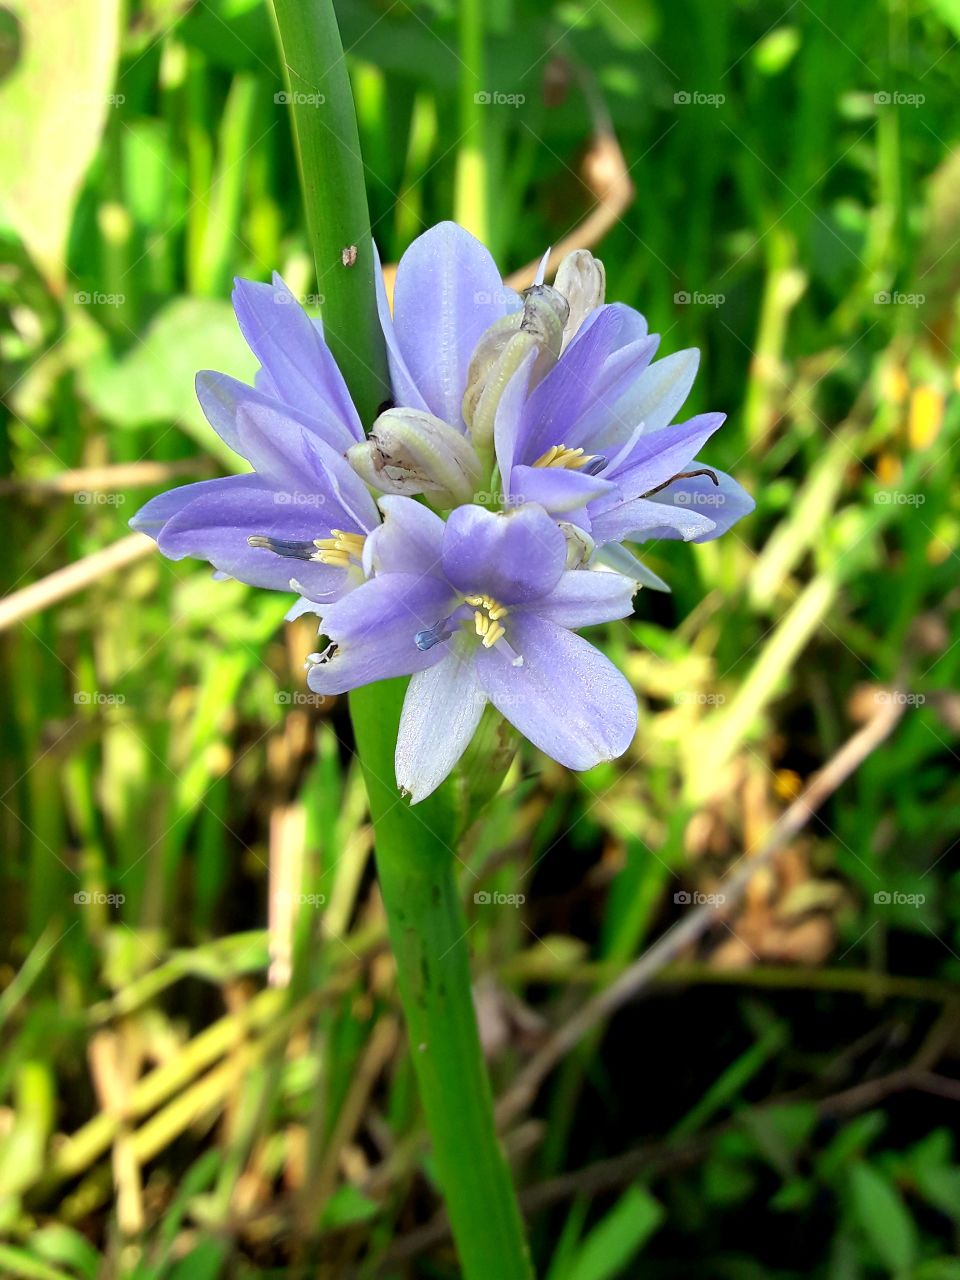 Water Hyacinth blooming flower